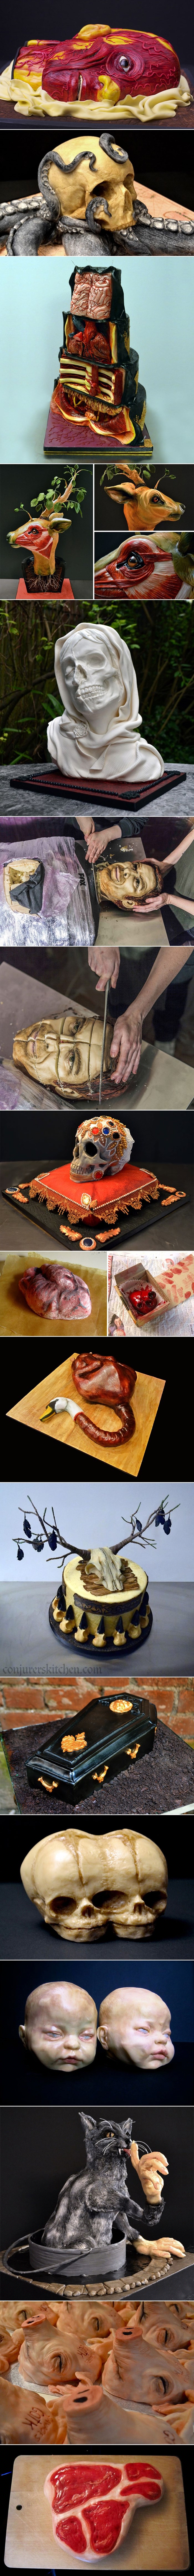 Galerija: Ove horor-torte su samo za one s dobrim želucem